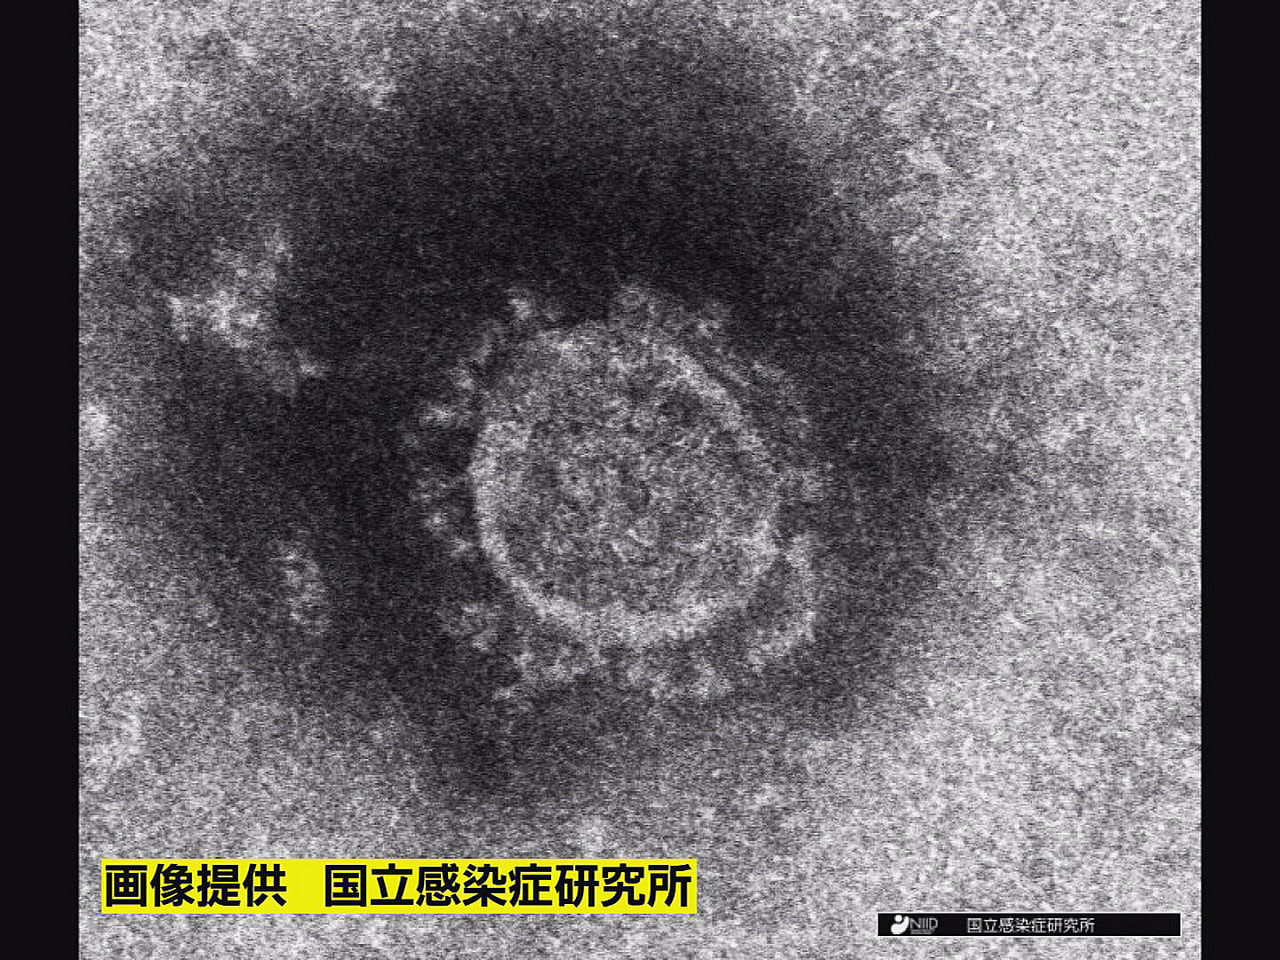 岐阜県は２日、新型コロナウイルスの新規感染者が４２８人確認されたと発表しました。...